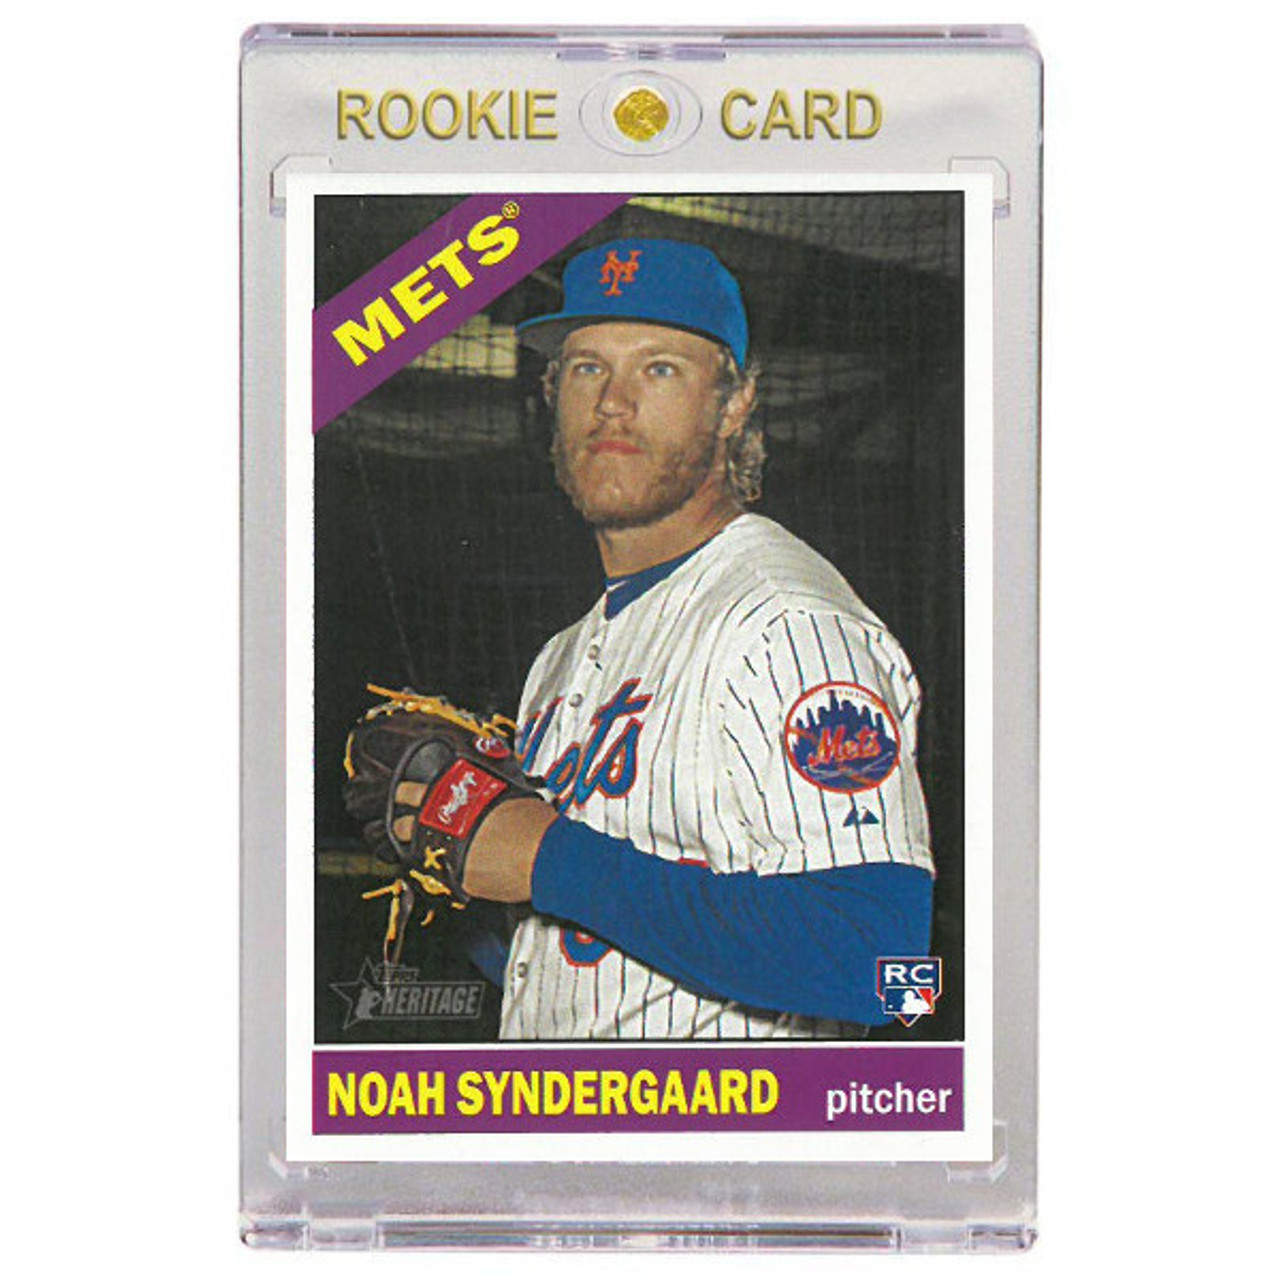 Noah Syndergaard New York Mets 2015 Topps Heritage # 618 Rookie Card